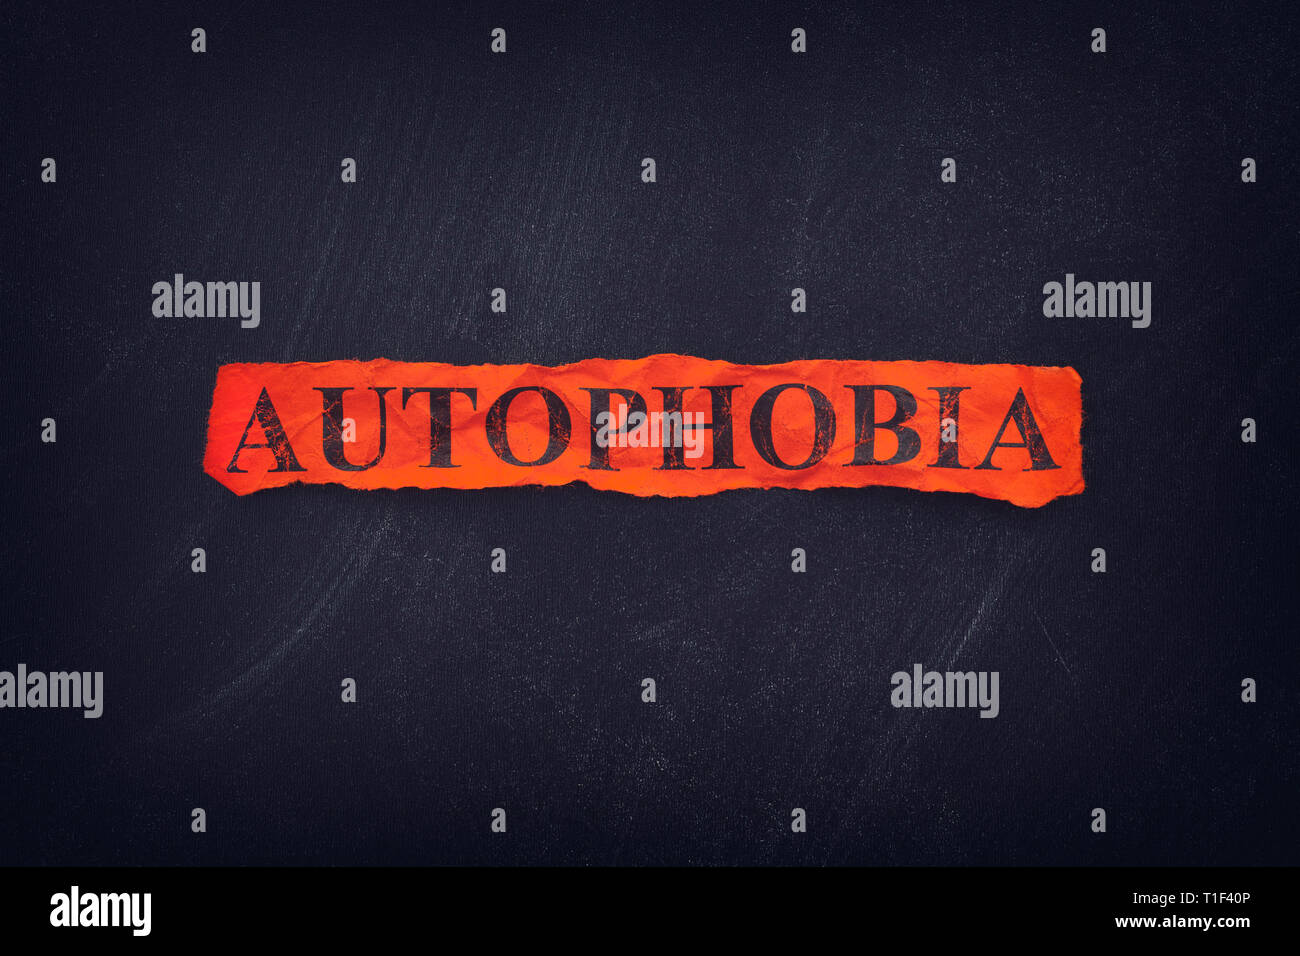 Autophobia mot rouge sur bout de papier déchiré. Autophobia - peur d'être seul. Banque D'Images